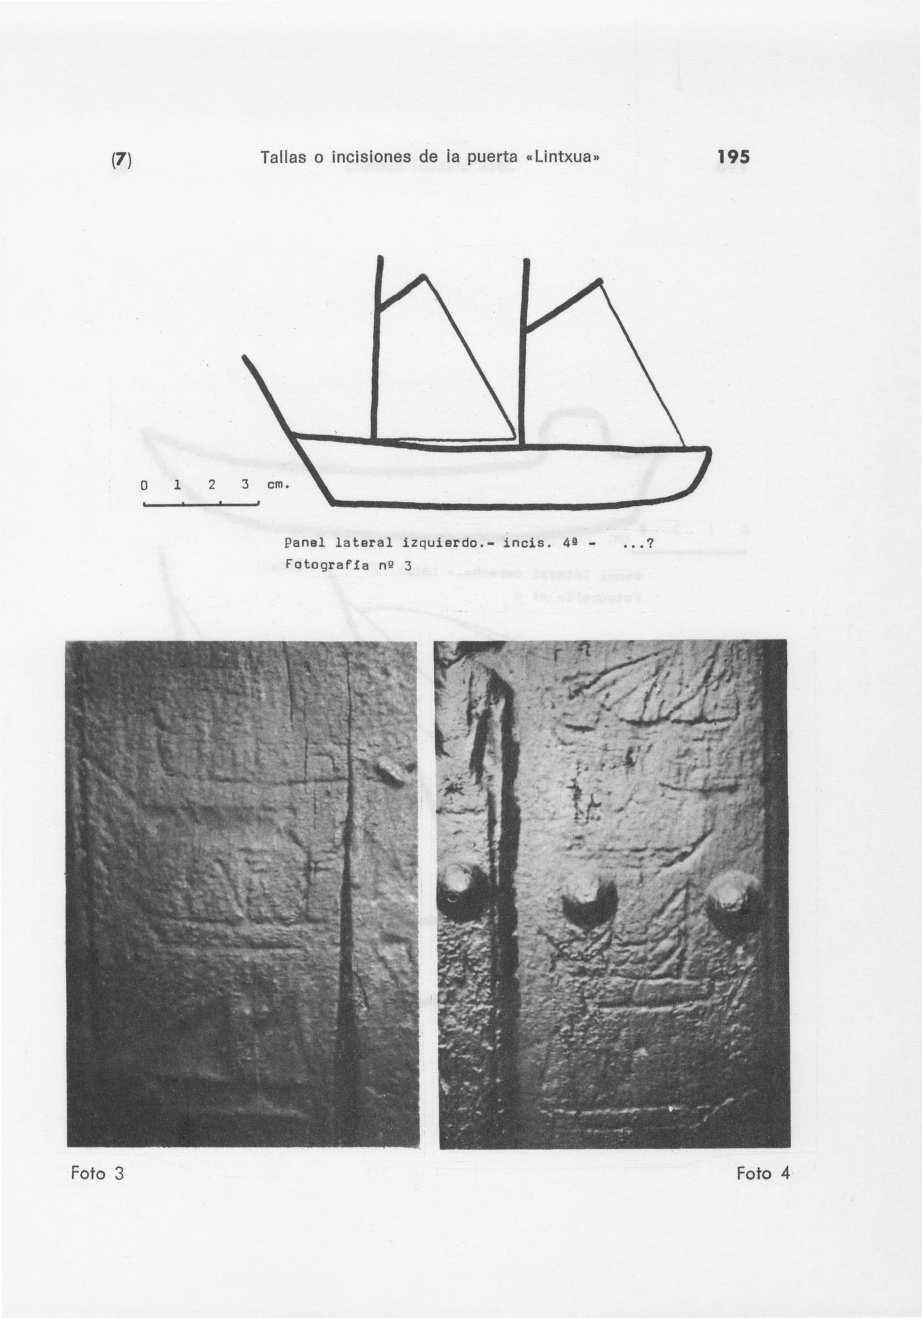 (7 ) Tallas o incisiones de la puerta "Lintxua» 195 Panel